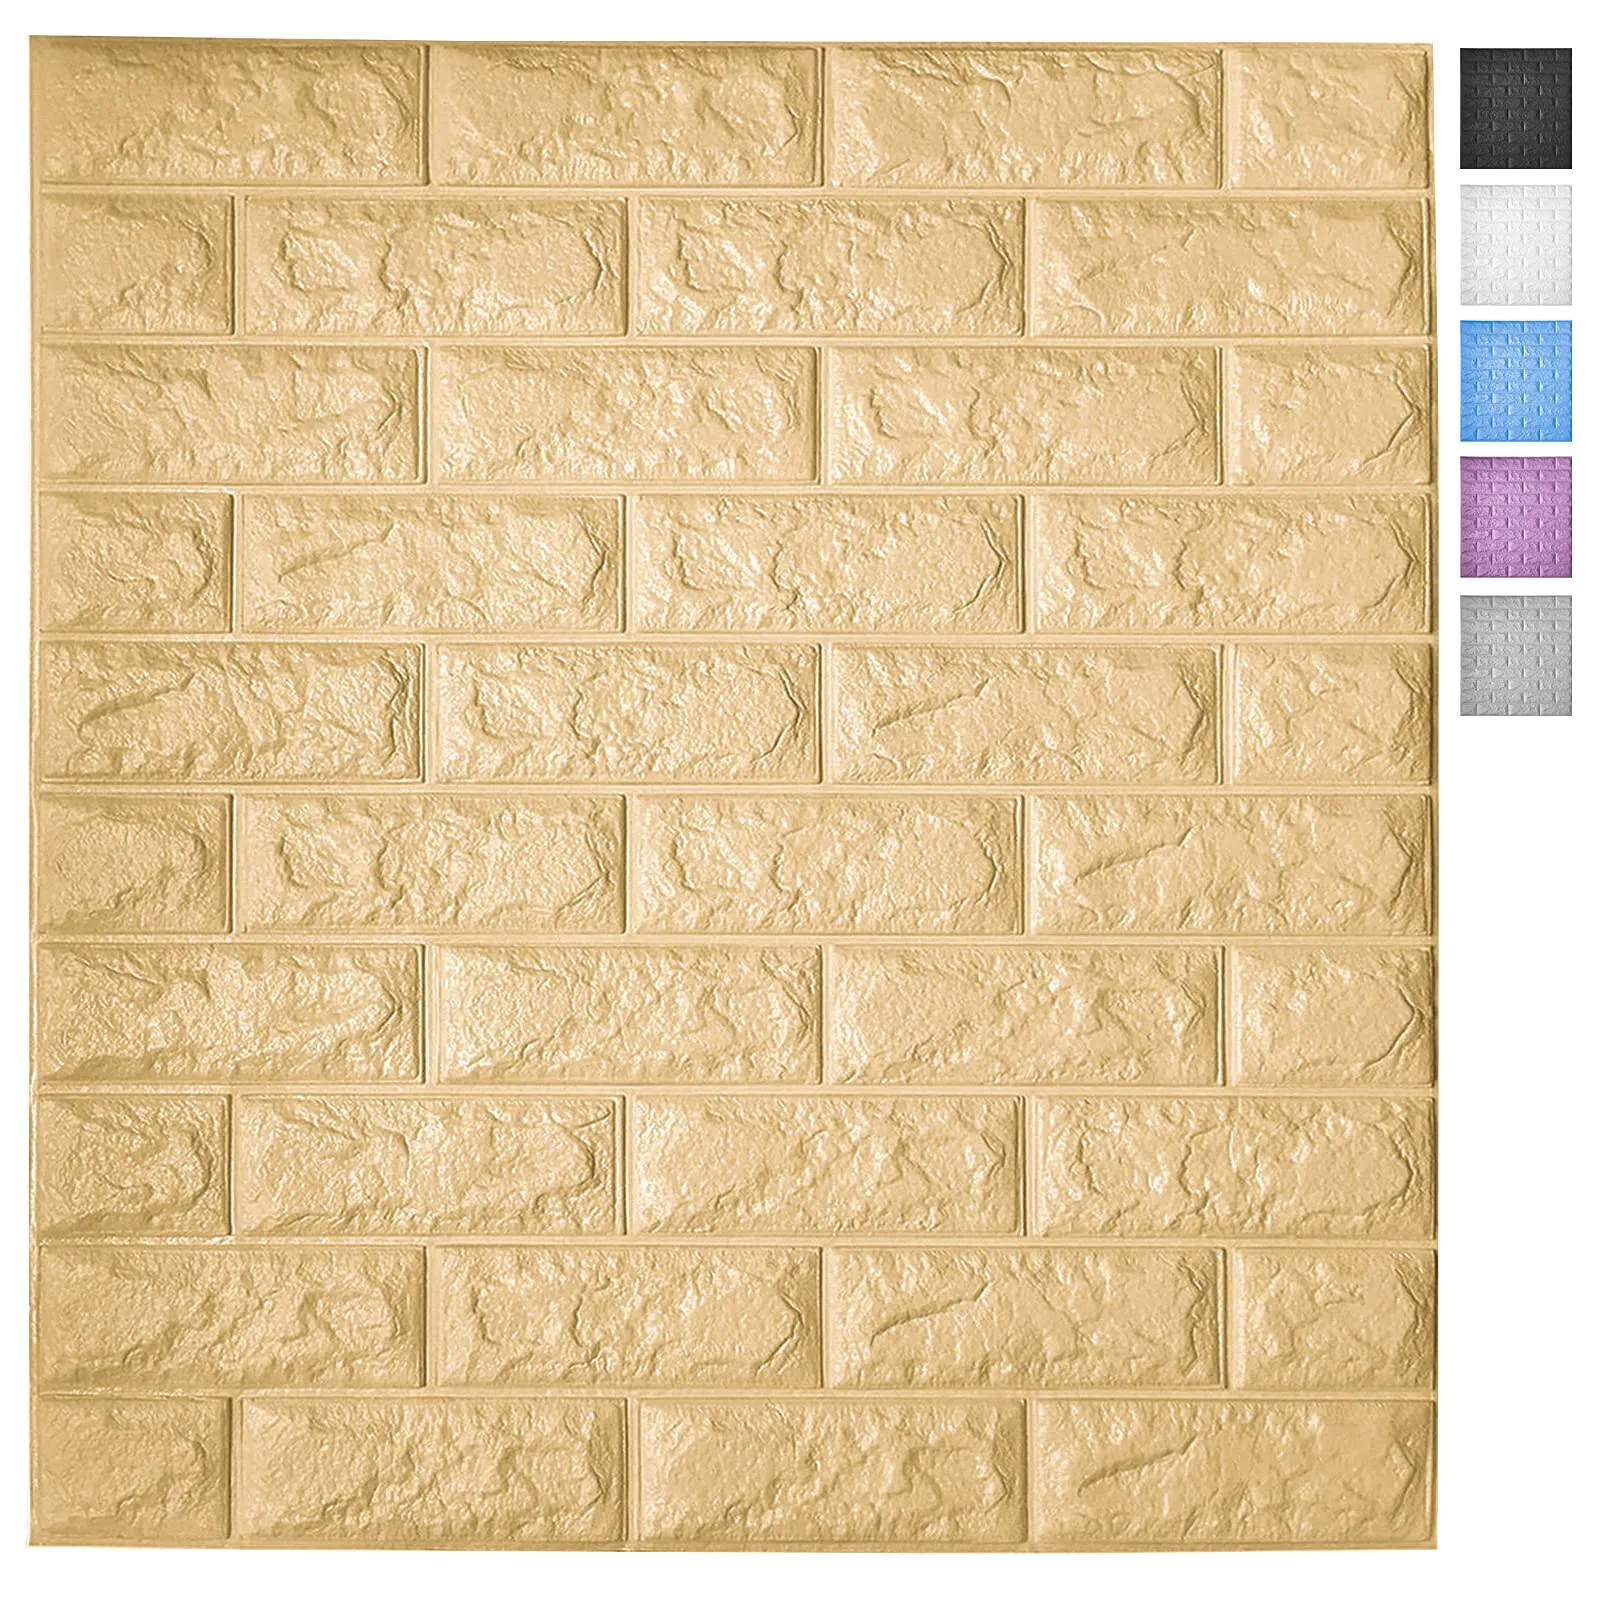 Art3d 5-Pack Peel and Stick 3D Wallpaper Panels for Interior Wall Decor Carta da parati autoadesiva in mattoni di gommapiuma in giallo, copre 29 piedi quadrati